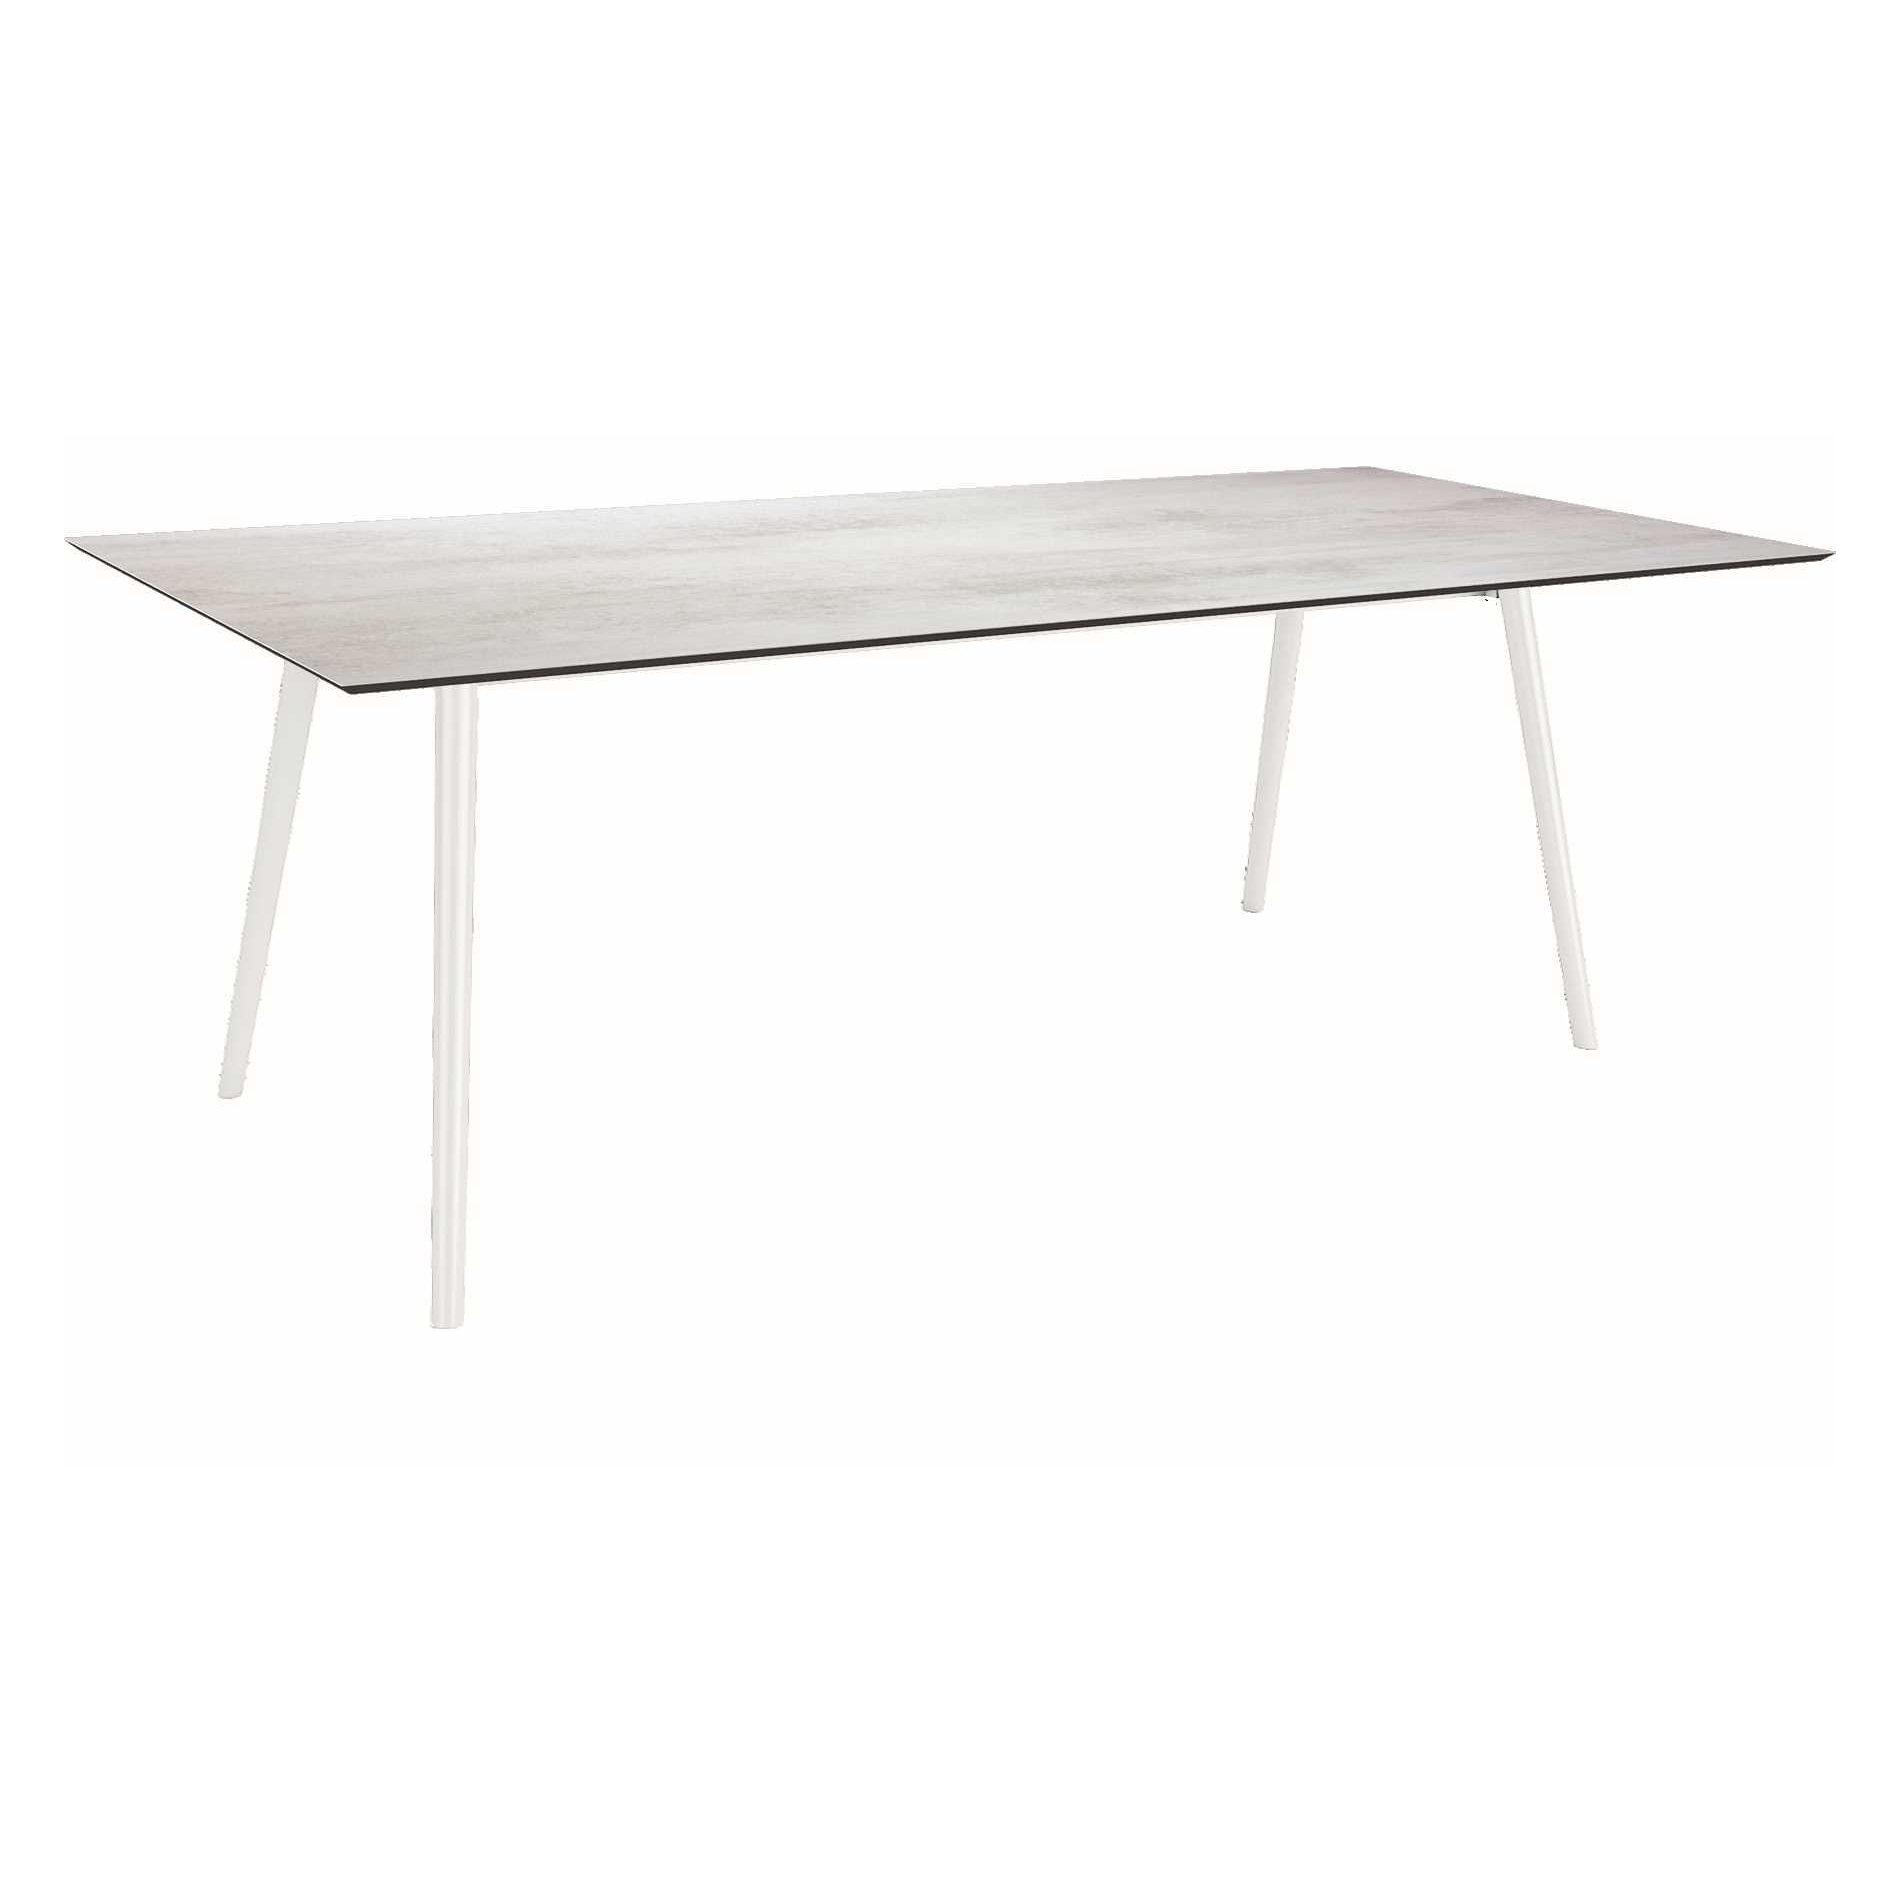 Stern Tisch "Interno", Größe 220x100cm, Alu weiß, Rundrohr, Tischplatte HPL Zement hell